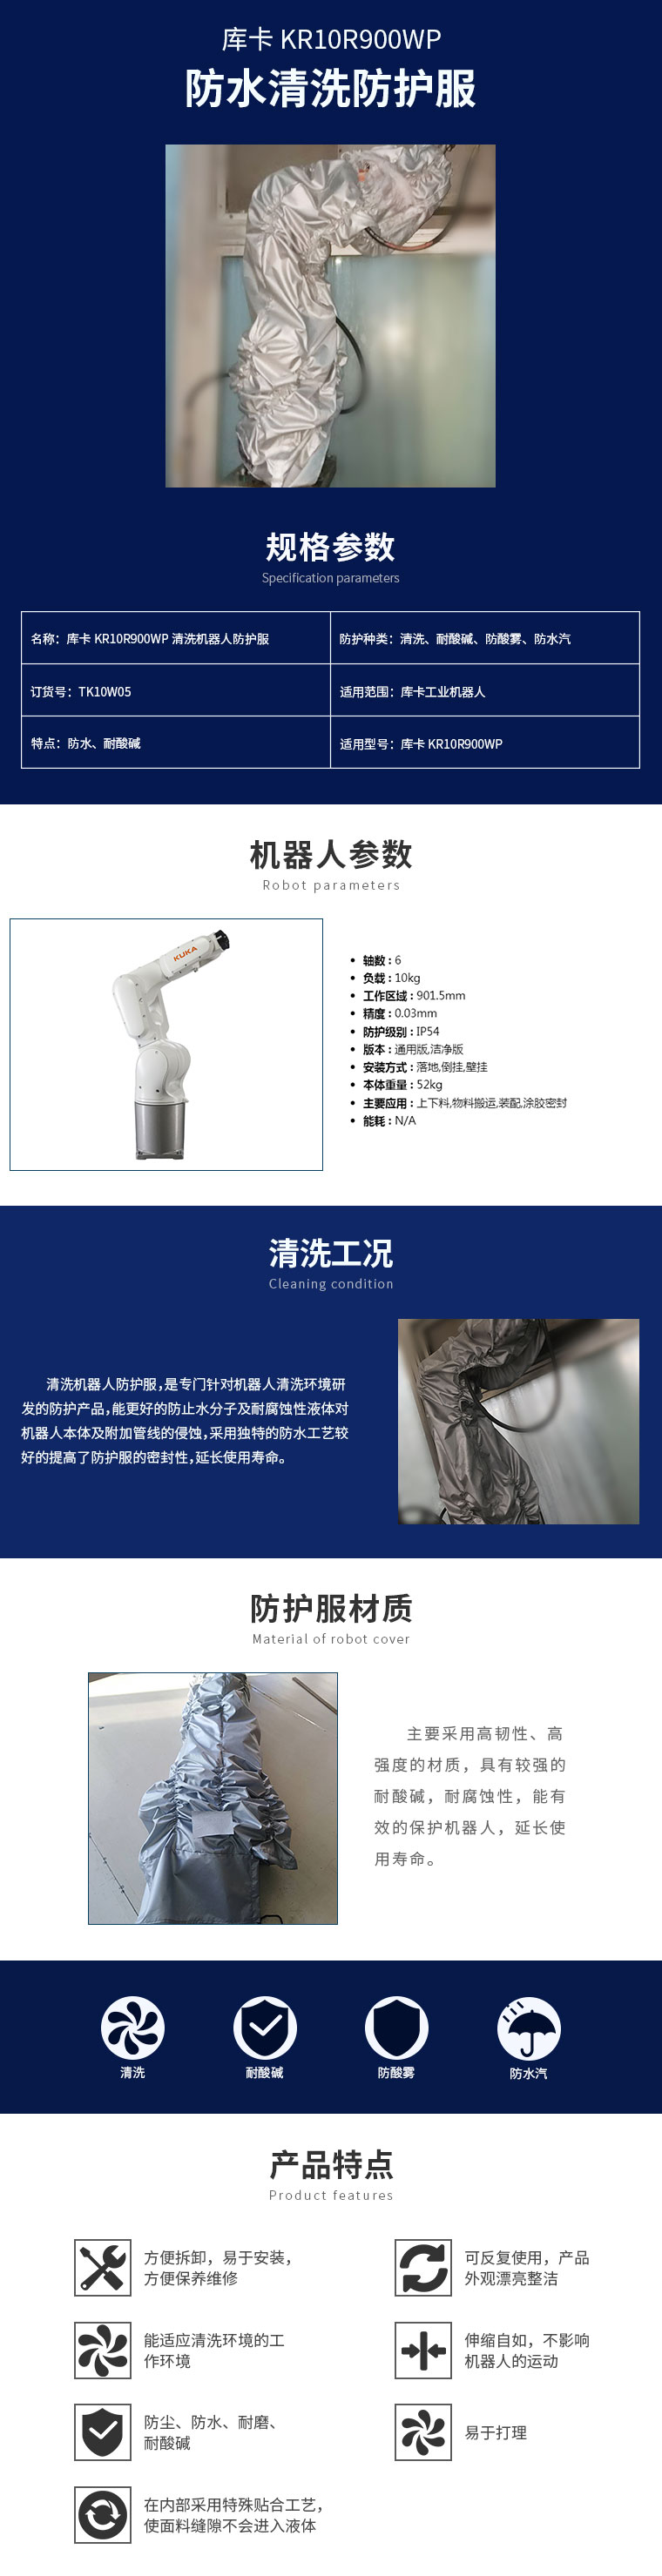 库卡-KR10R900WP清洗机器人防护服-详情页.jpg